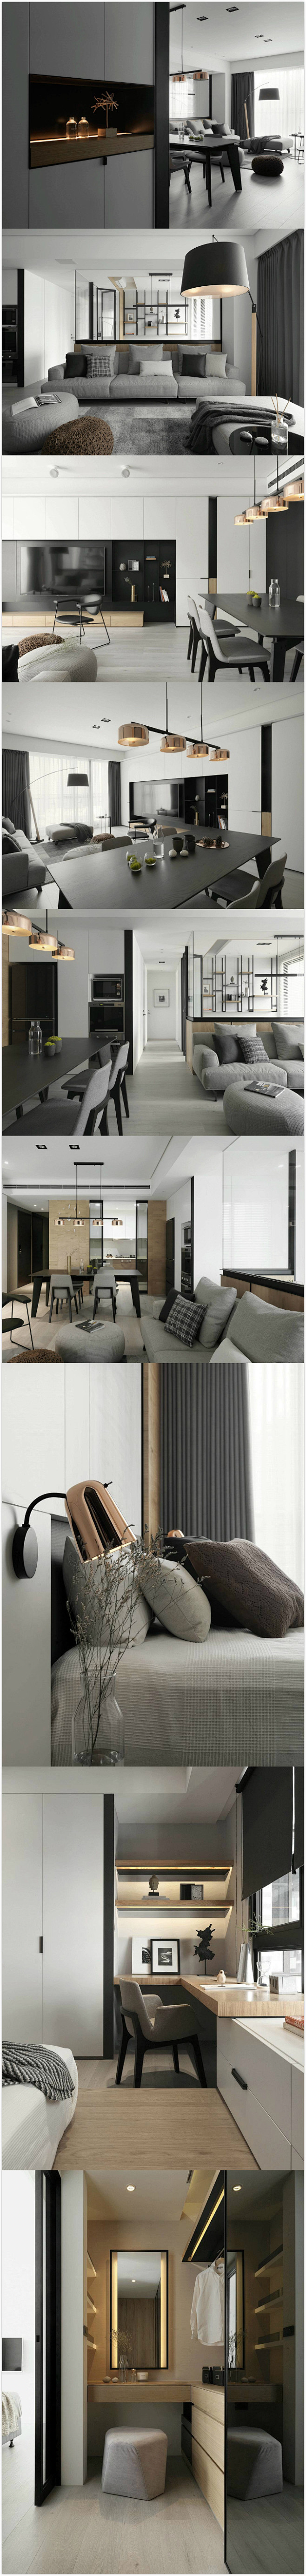 台湾172㎡三居室现代简风住宅设计。@室...